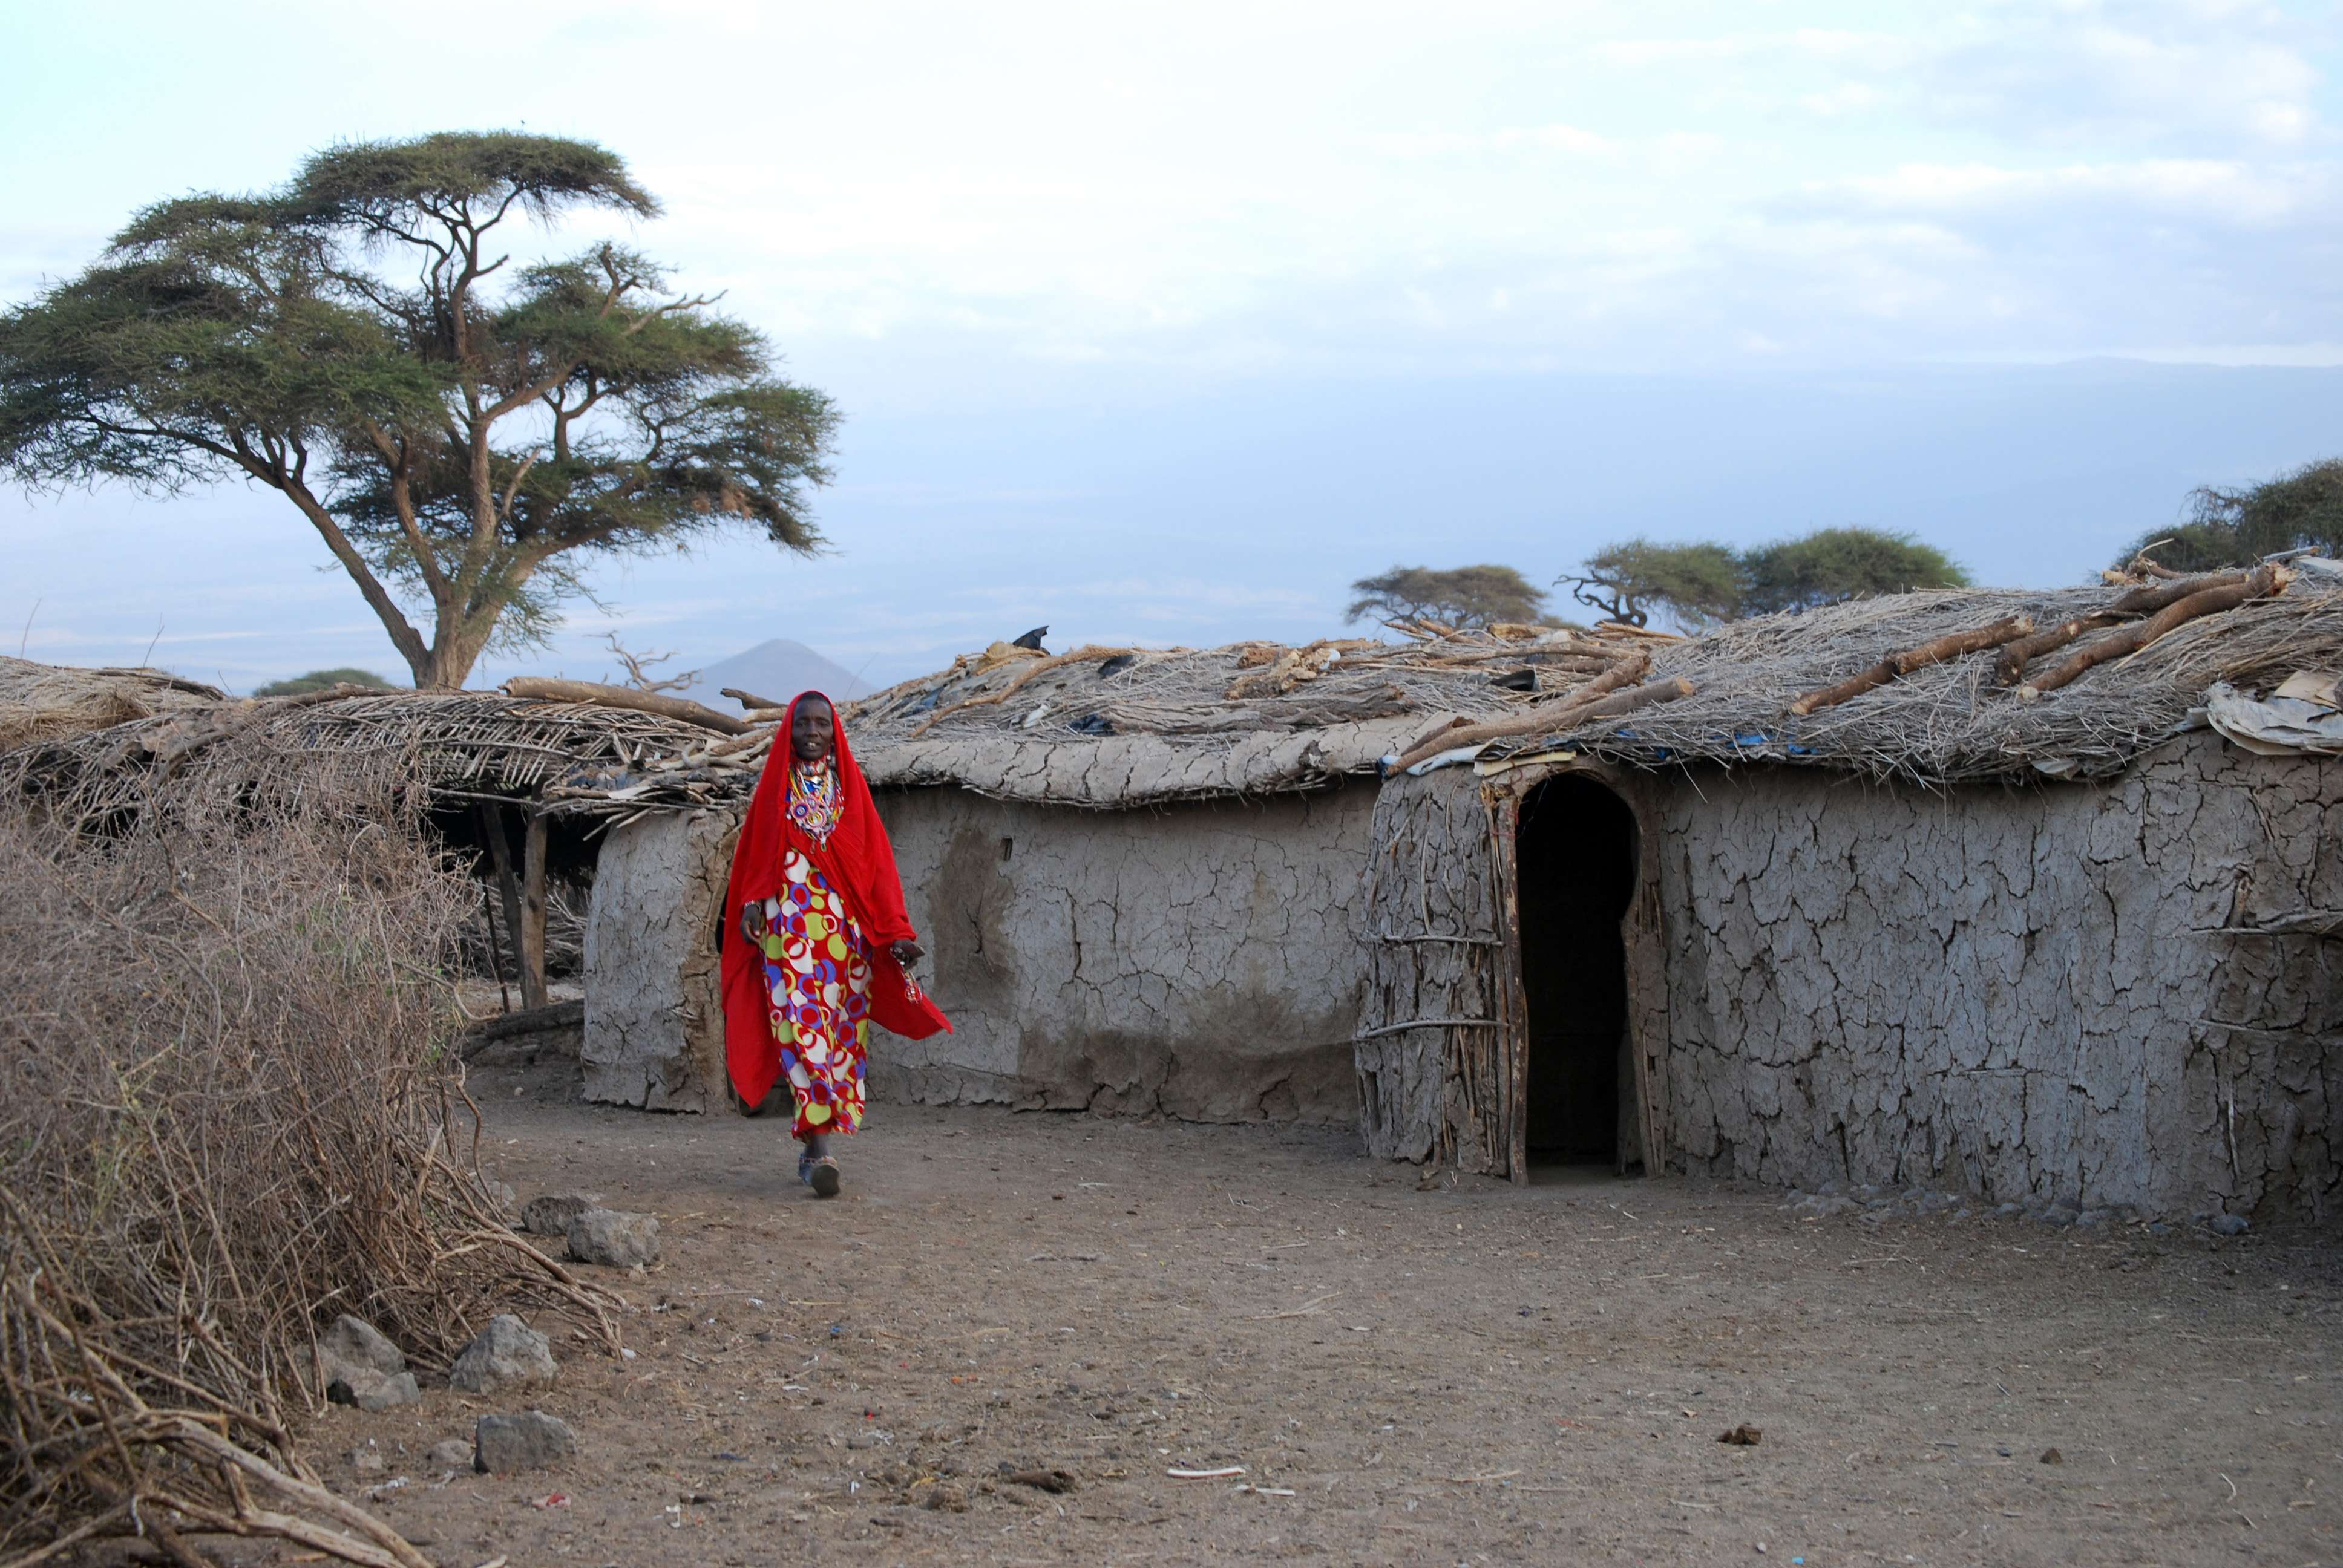 Kenia una experiencia inolvidable - Blogs de Kenia - Los Masais. Un pueblo frente a una encrucijada (2)